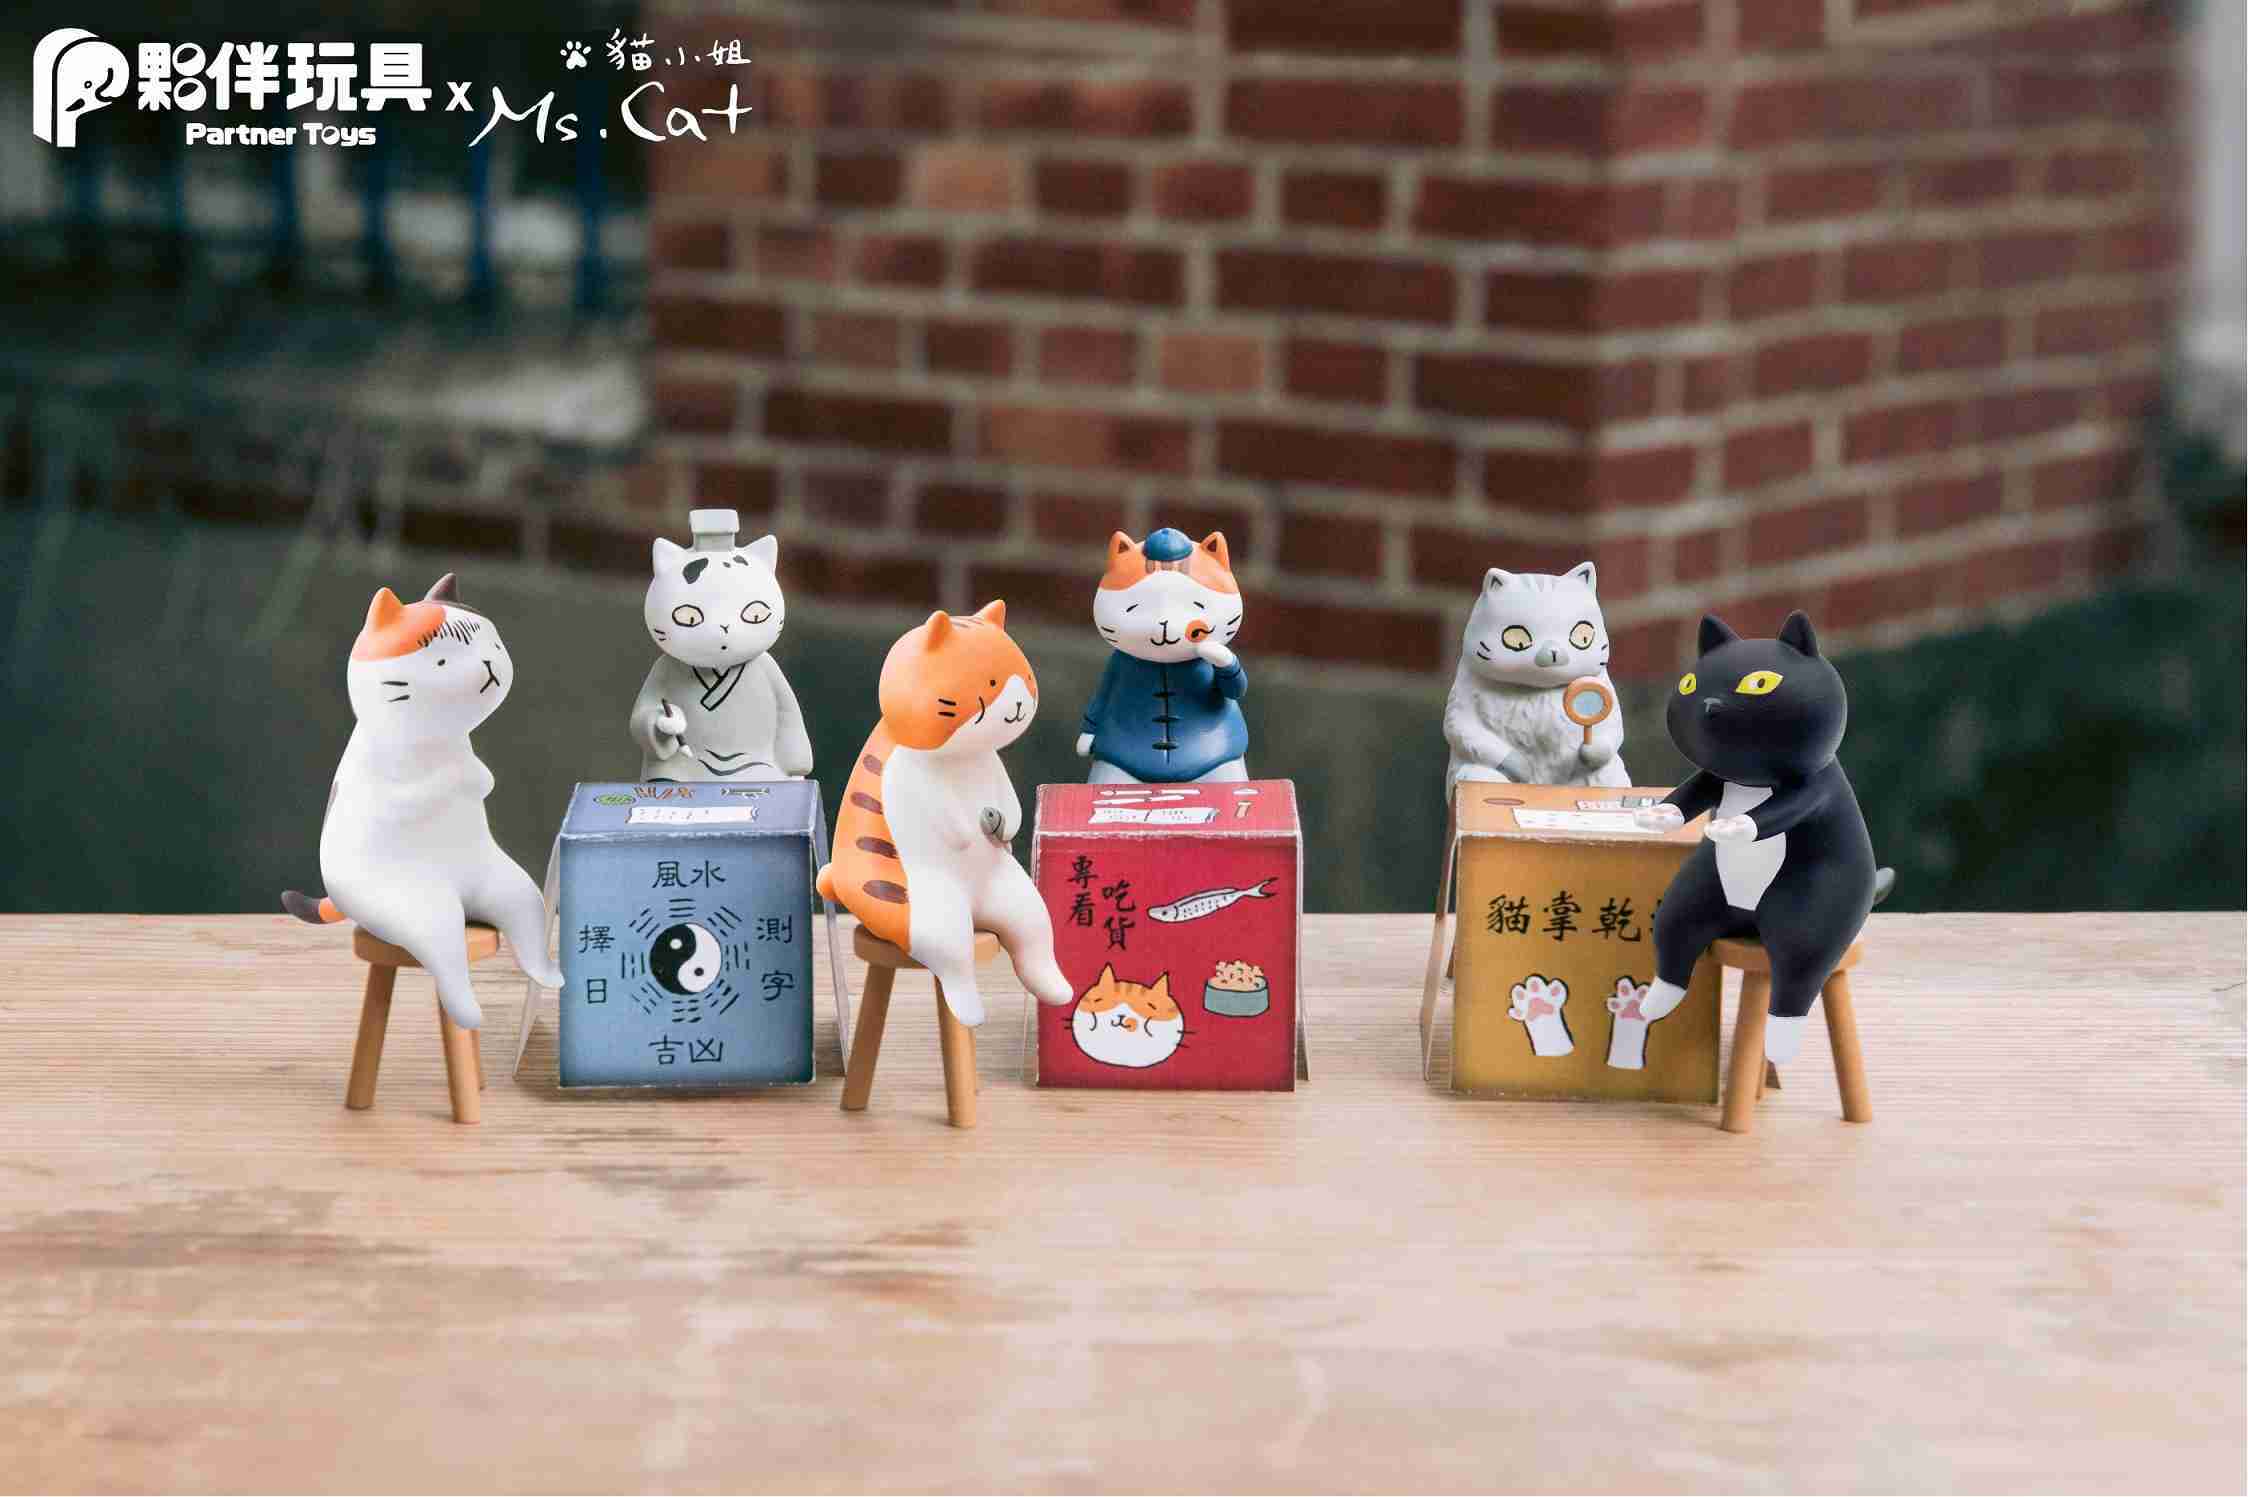 【玩具之森】《現貨》夥伴玩具✕貓小姐Ms.Cat. - 算命喵仔 扭蛋 轉蛋 (一套6款出售)